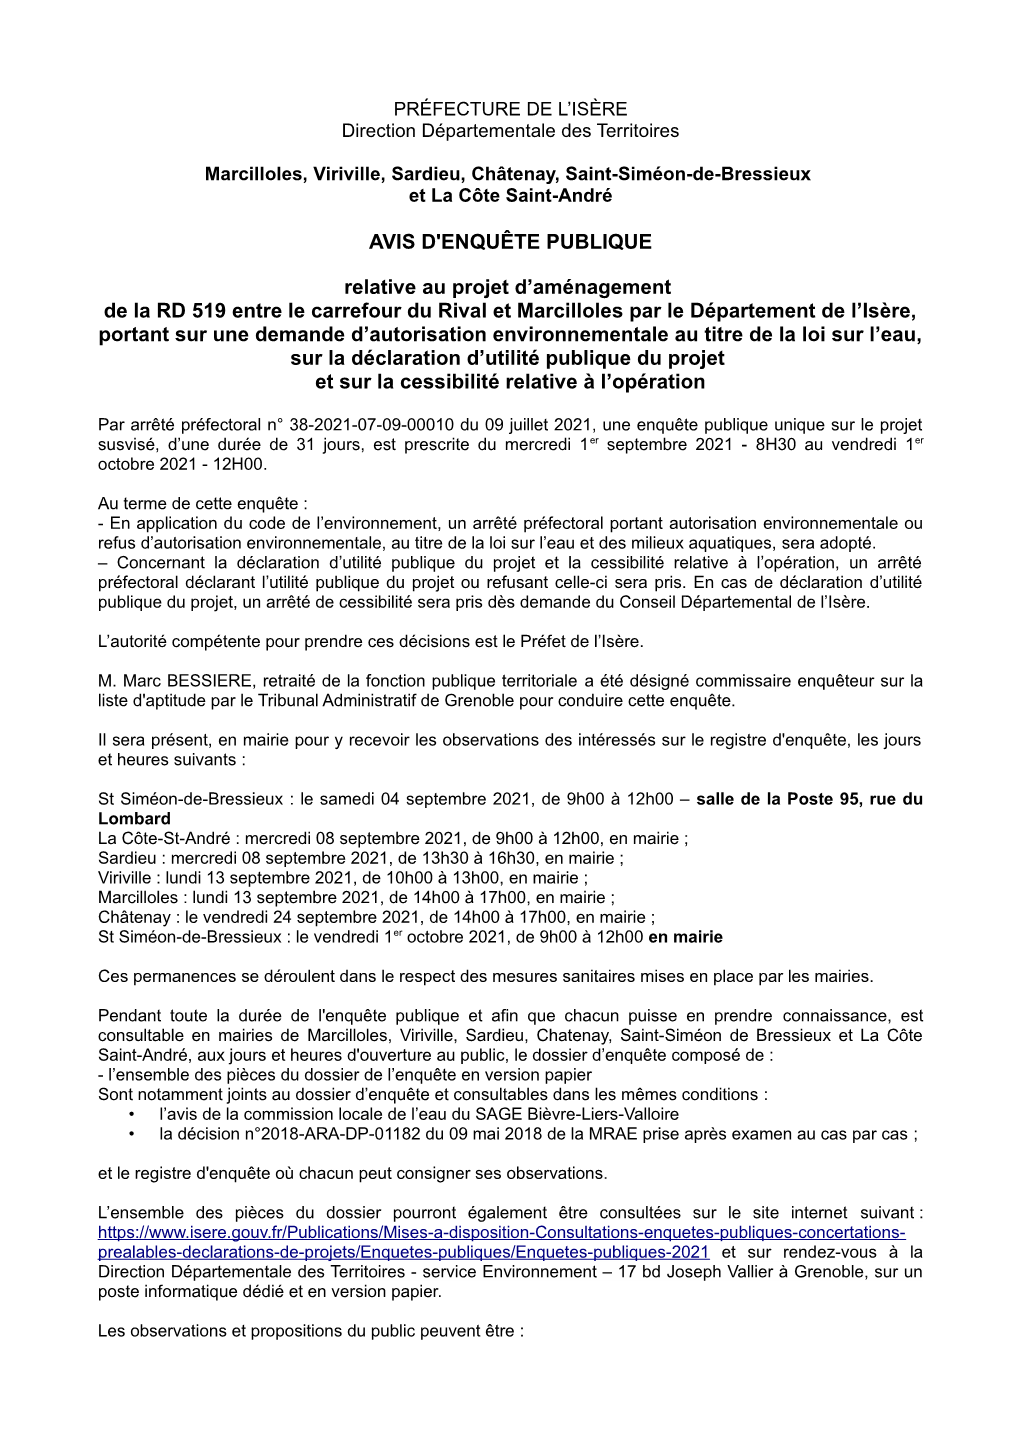 AVIS D'enquête PUBLIQUE Relative Au Projet D'aménagement De La RD